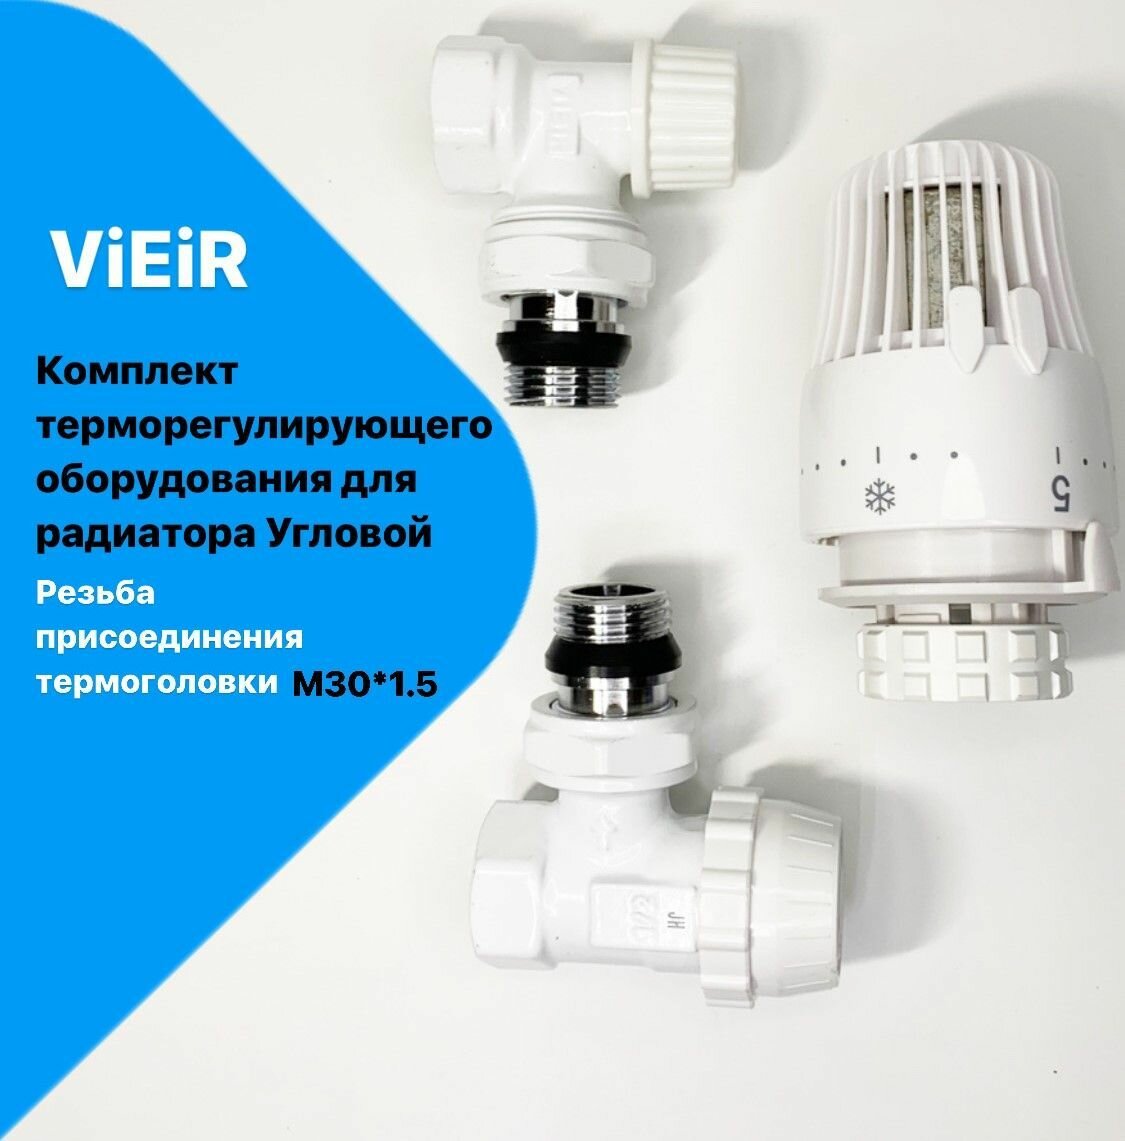 Комплект терморегулирующего оборудования для радиатора угловой 1/2" - Белый VR310-F -ViEiR